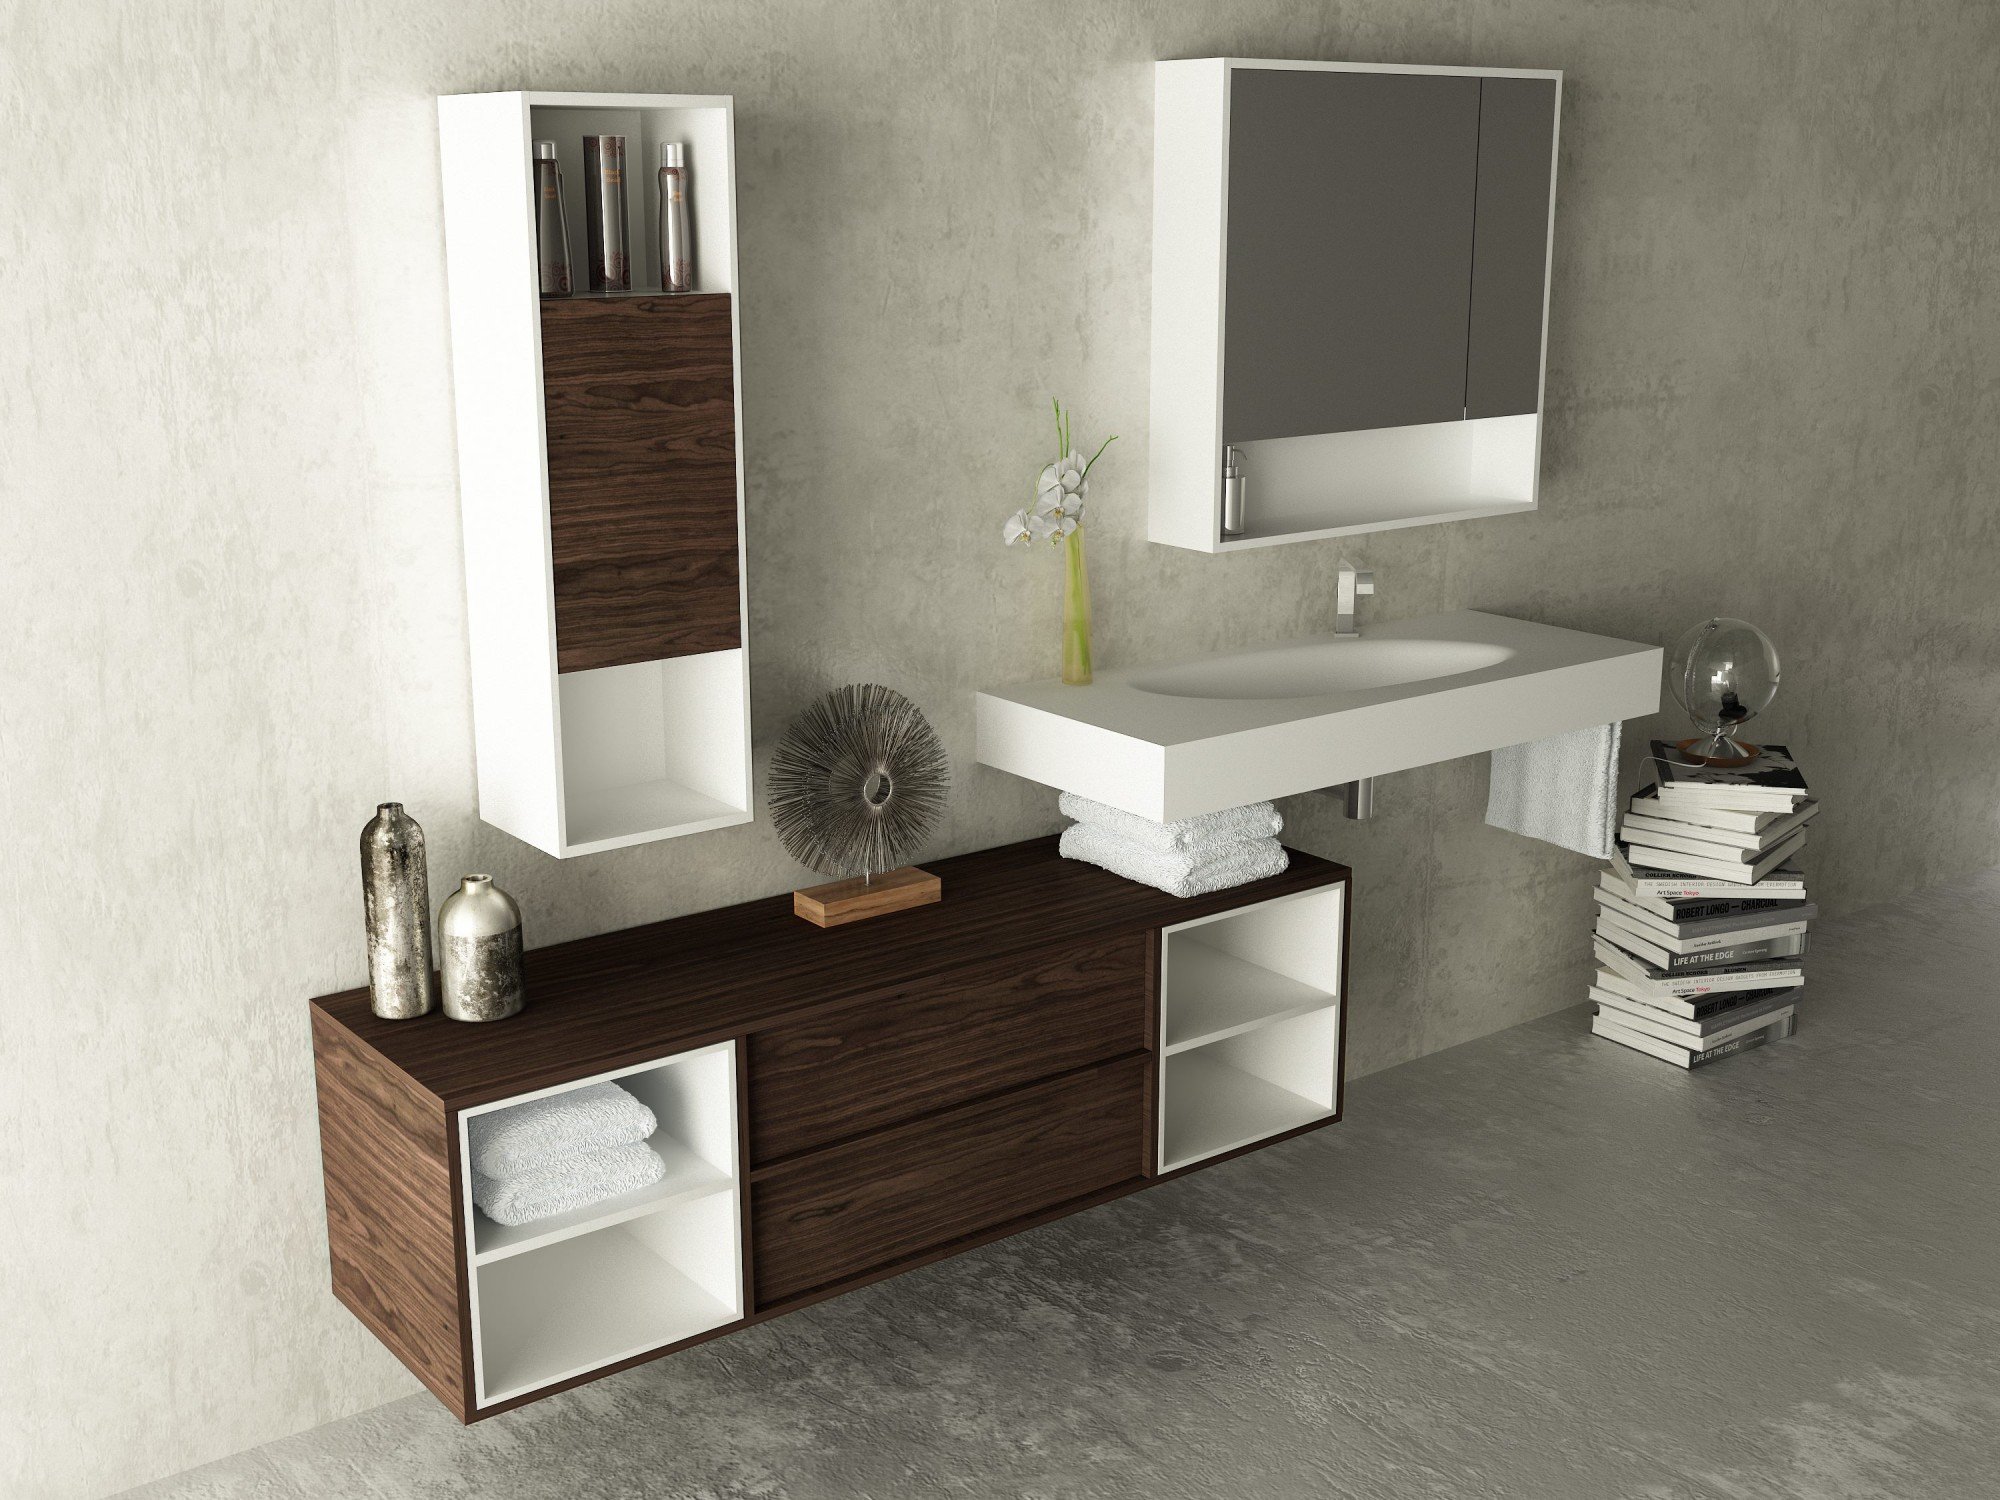 SUN :: Mobiliario Baño :: Ikebe, fabrica de muebles de baño a medida, lavabos solid surface, lavabos resina, lavabos corian y complementos para el baño.